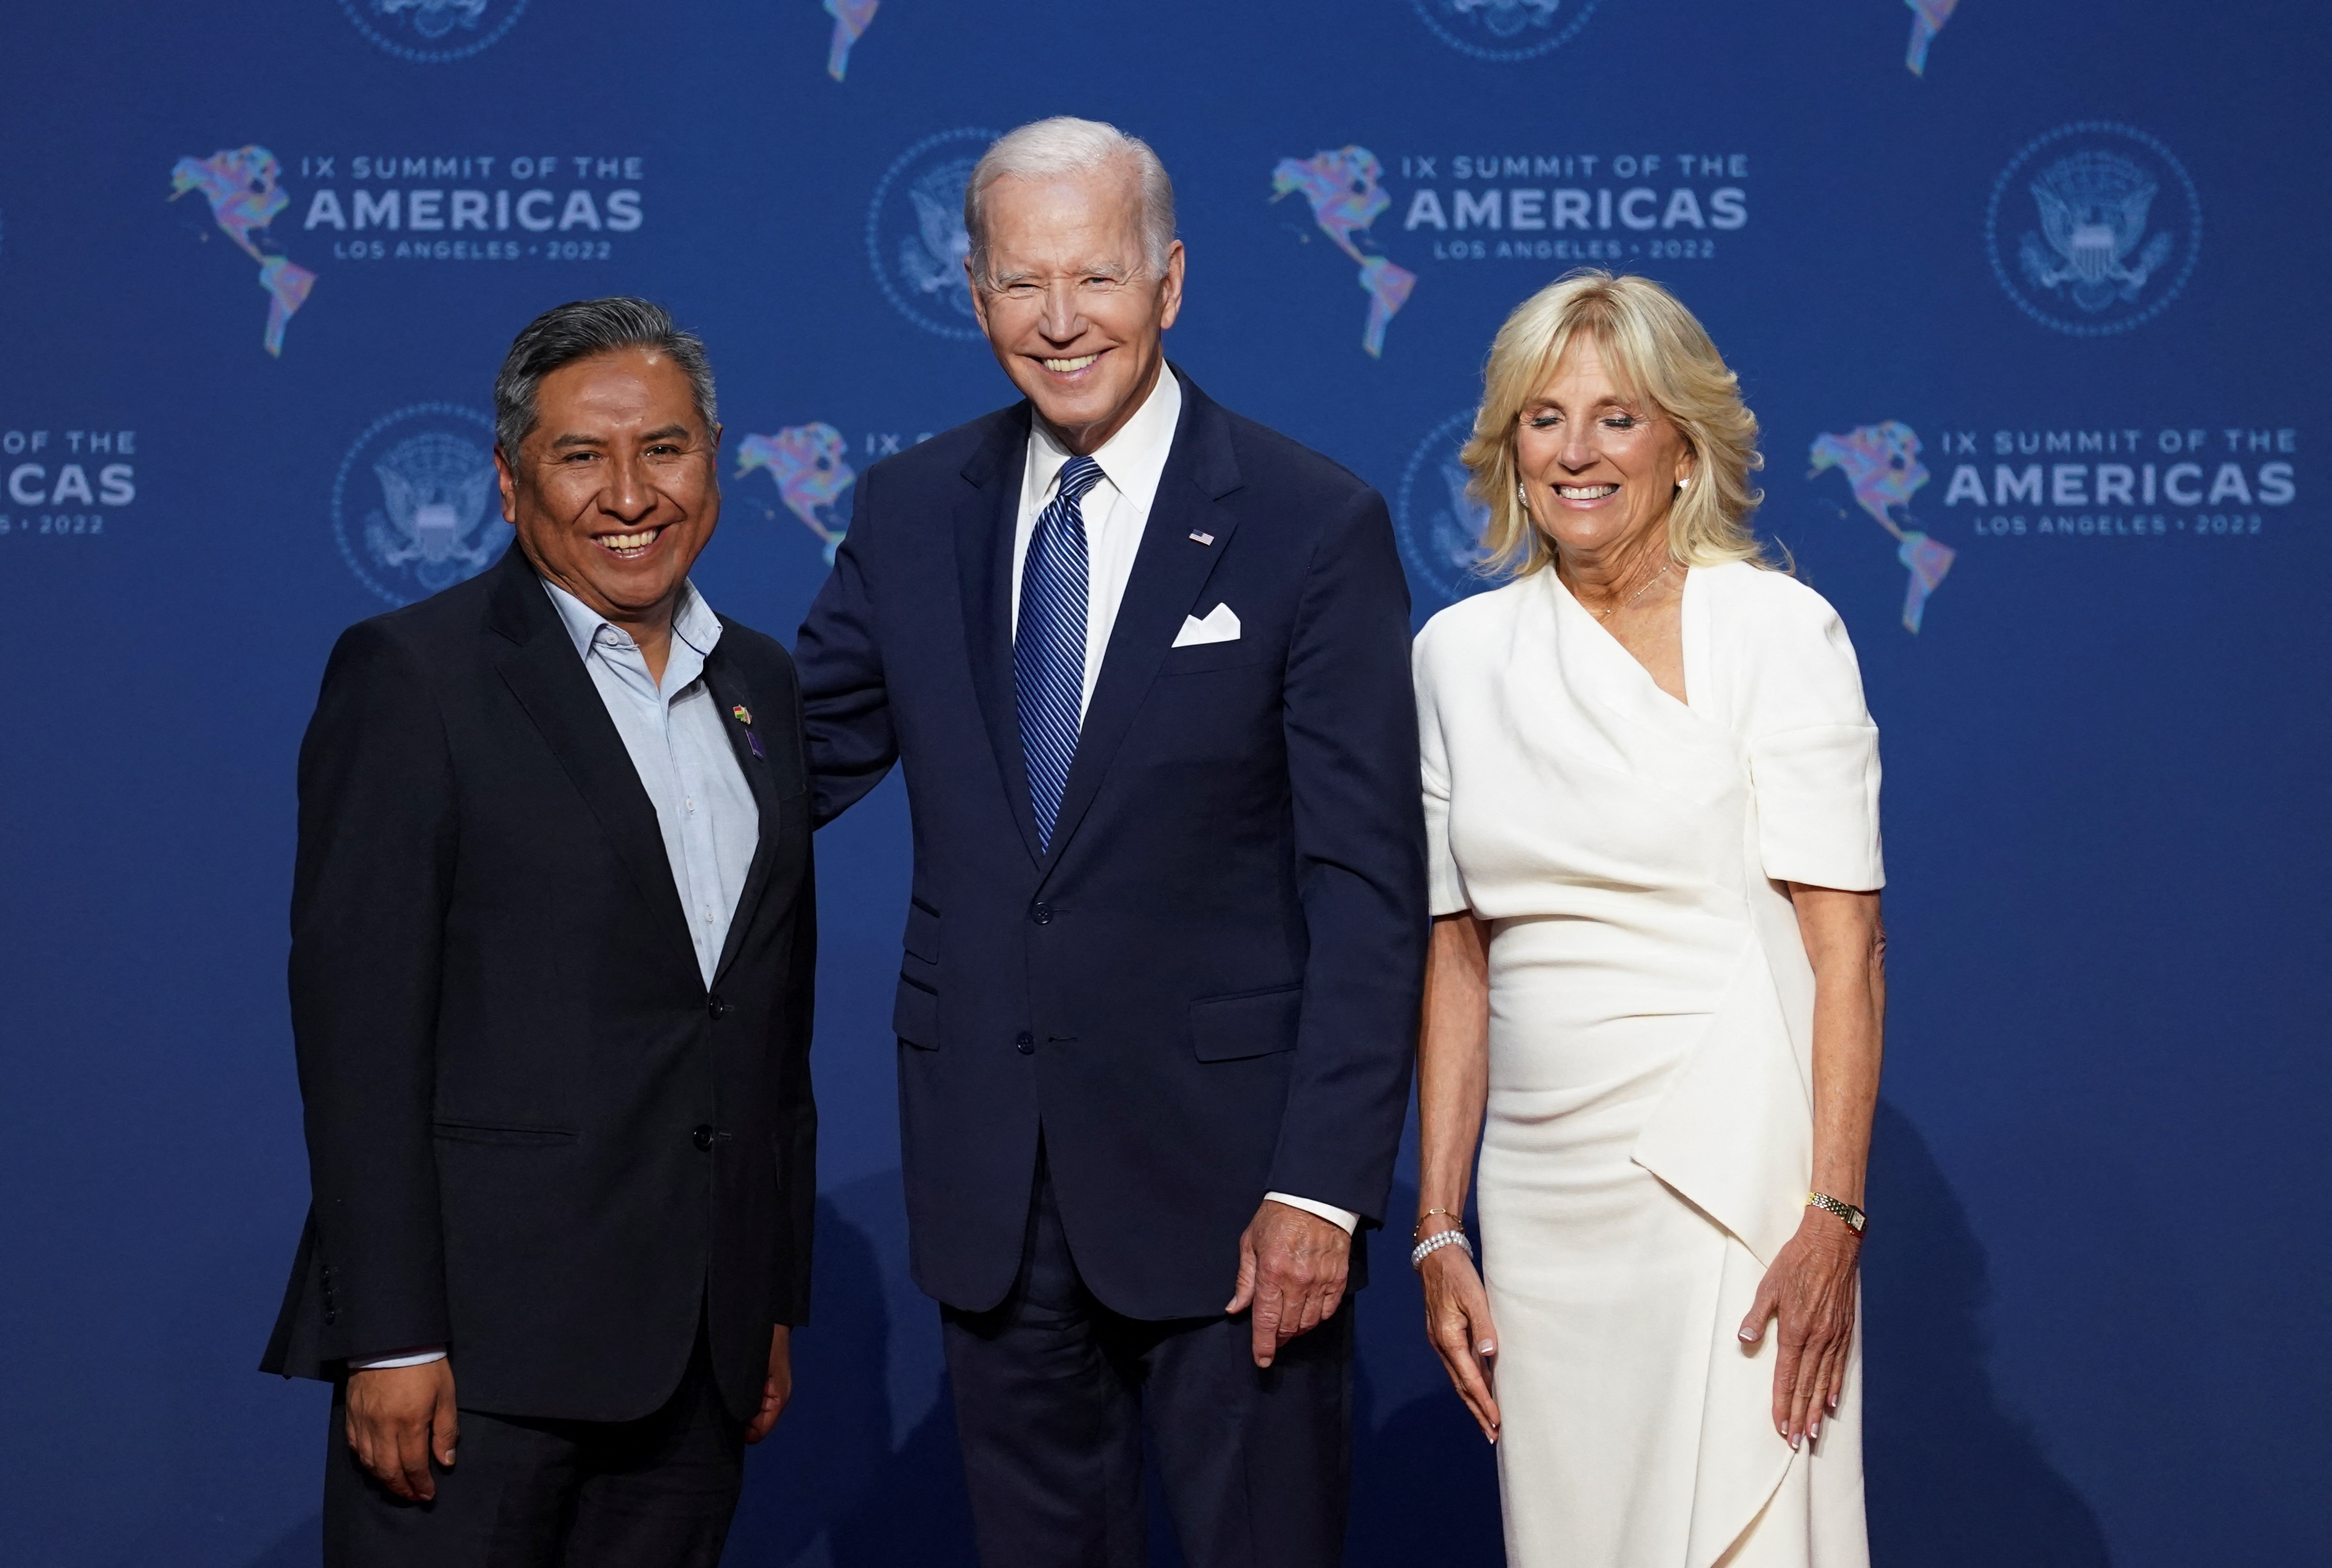 U.S. President Joe Biden welcomes leaders at the Summit of the Americas, in Los Angeles